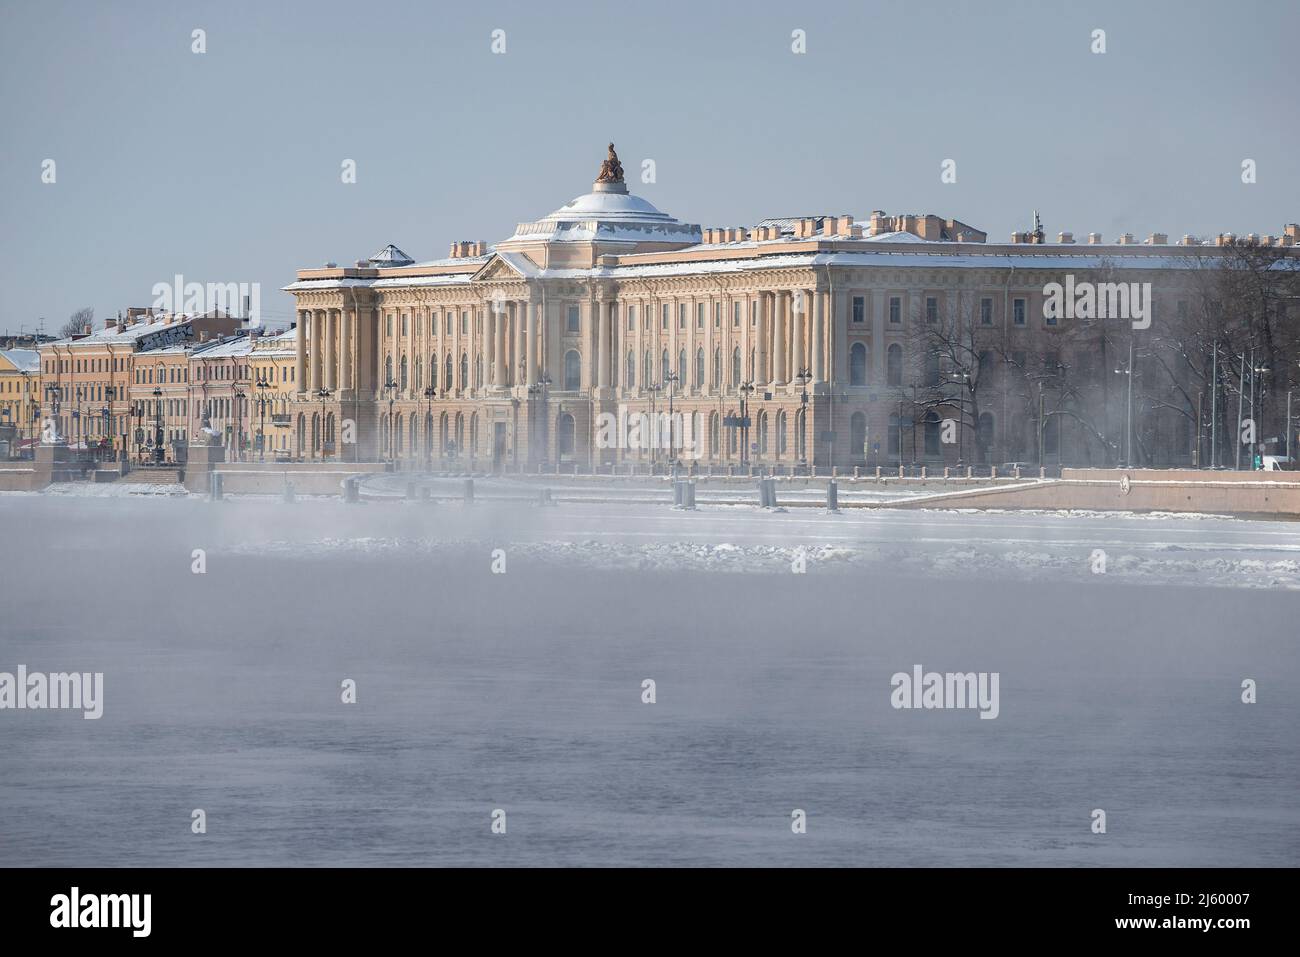 SANKT PETERSBURG, RUSSLAND - 15. FEBRUAR 2021: Blick auf das Gebäude der St. Petersburger Akademie der Künste, benannt nach Ilya Repin, während des Winters Neva Stockfoto